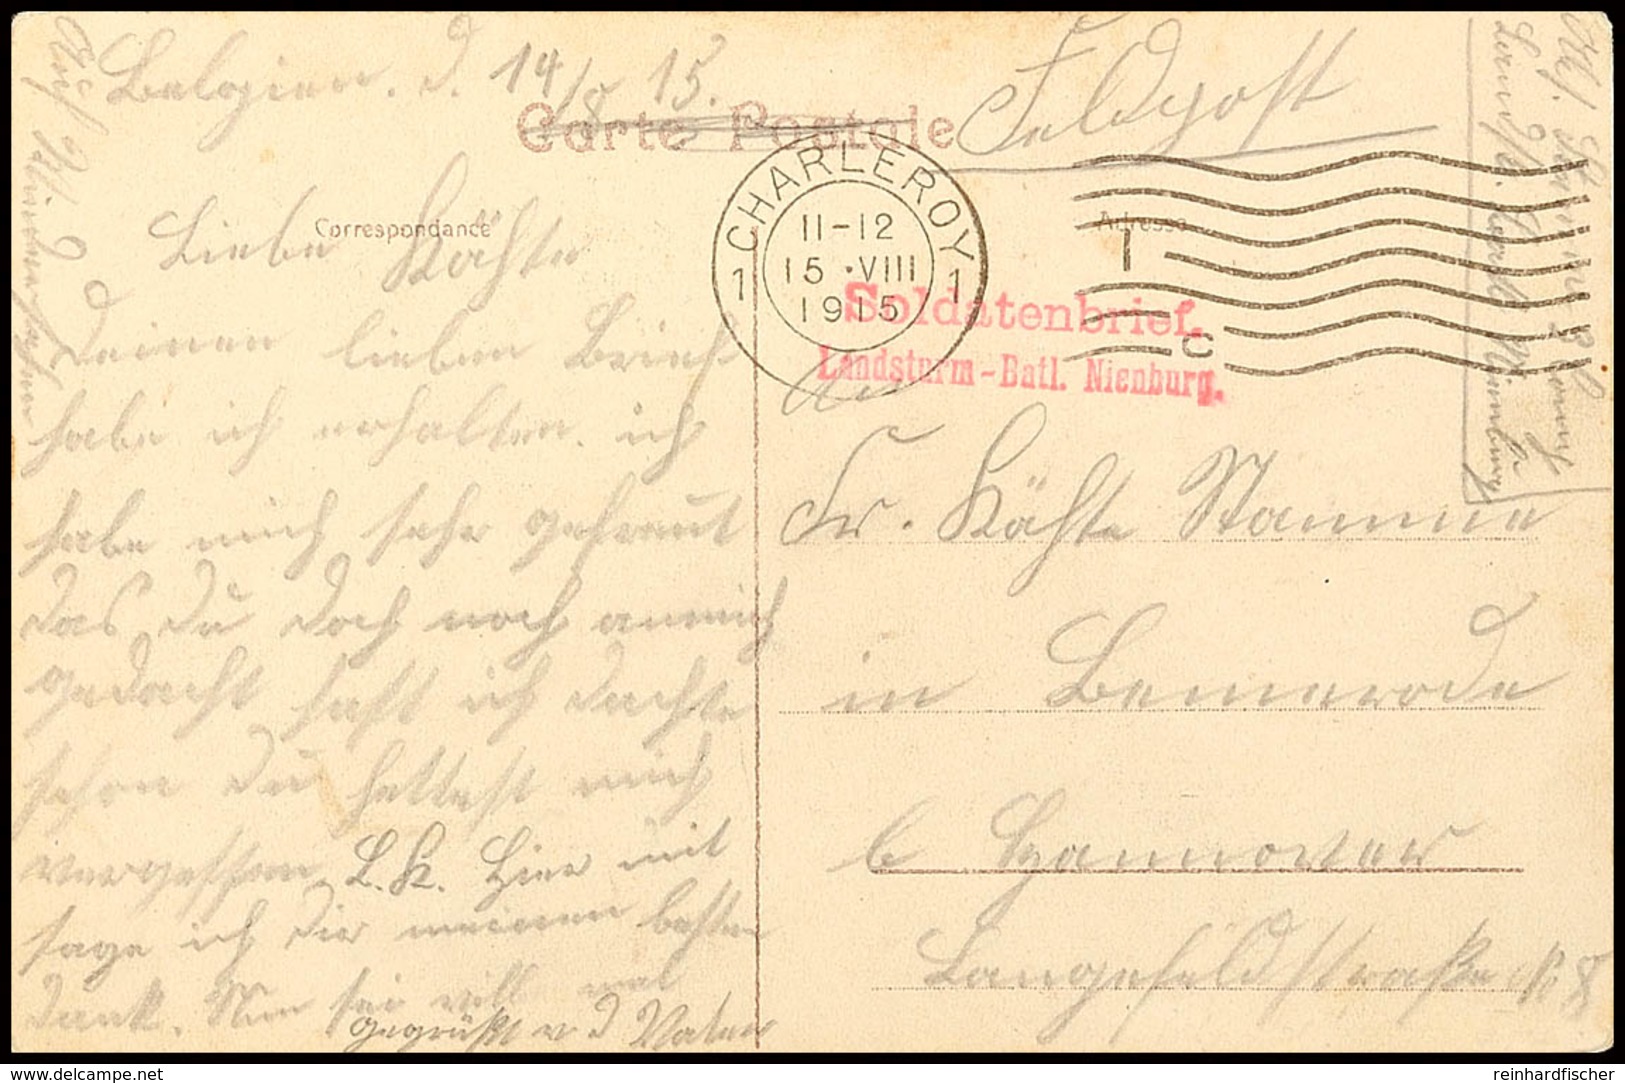 "CHARLEROY 1 15 VIII 1915" Klar Auf Feldpostkarte Mit Briefstempel Roter L2 "Soldatenbrief Landsturm-Batl. Nienburg"  BF - 1. WK